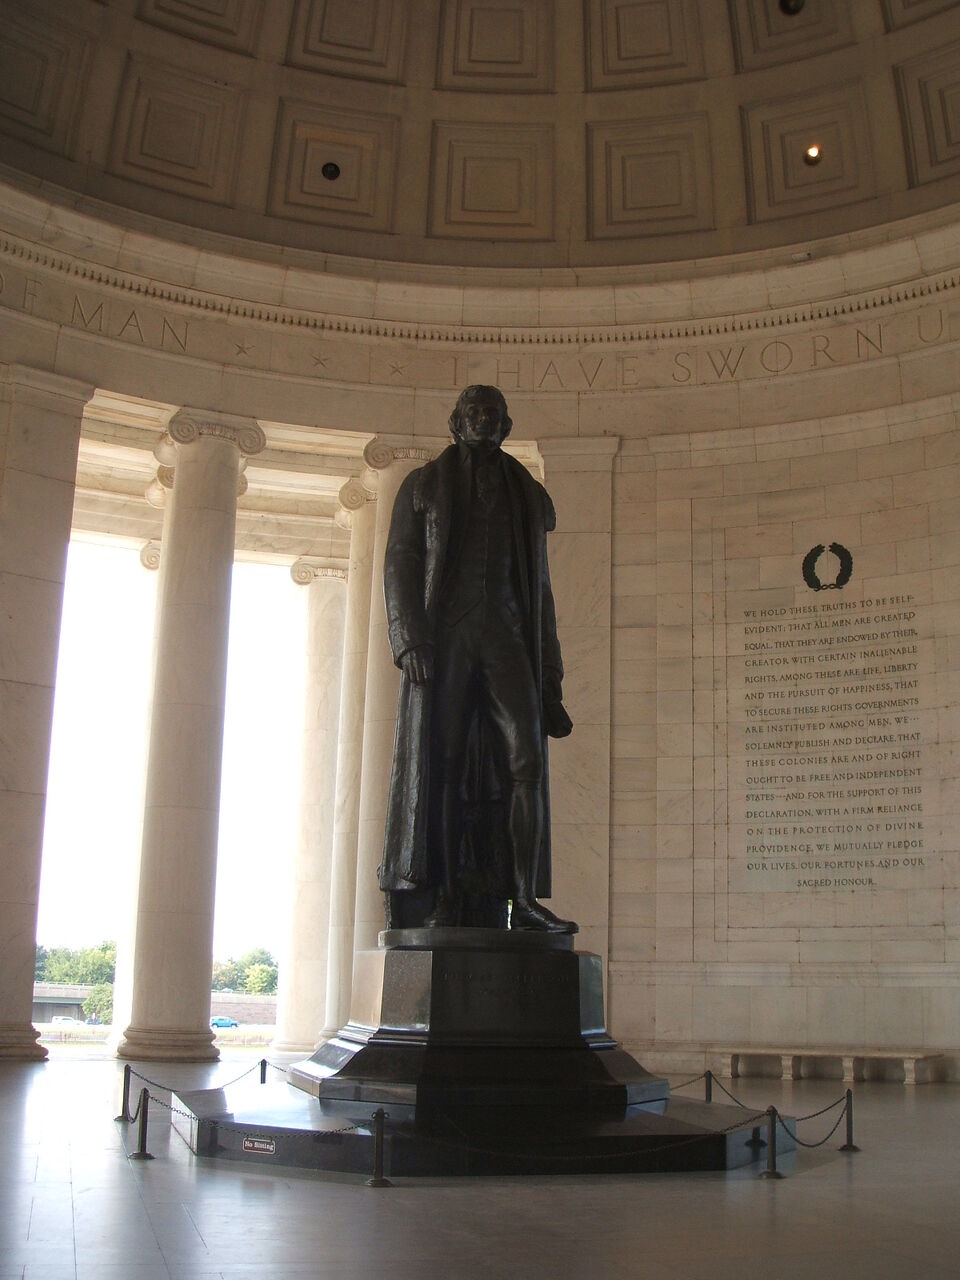 アメリカ第3代大統領ジェファーソンの記念館 トーマス ジェファーソン記念堂 Thomas Jefferson Memorial 世界遺産マイスター Lucky の人生を楽しく生きるための海外旅行ブログ